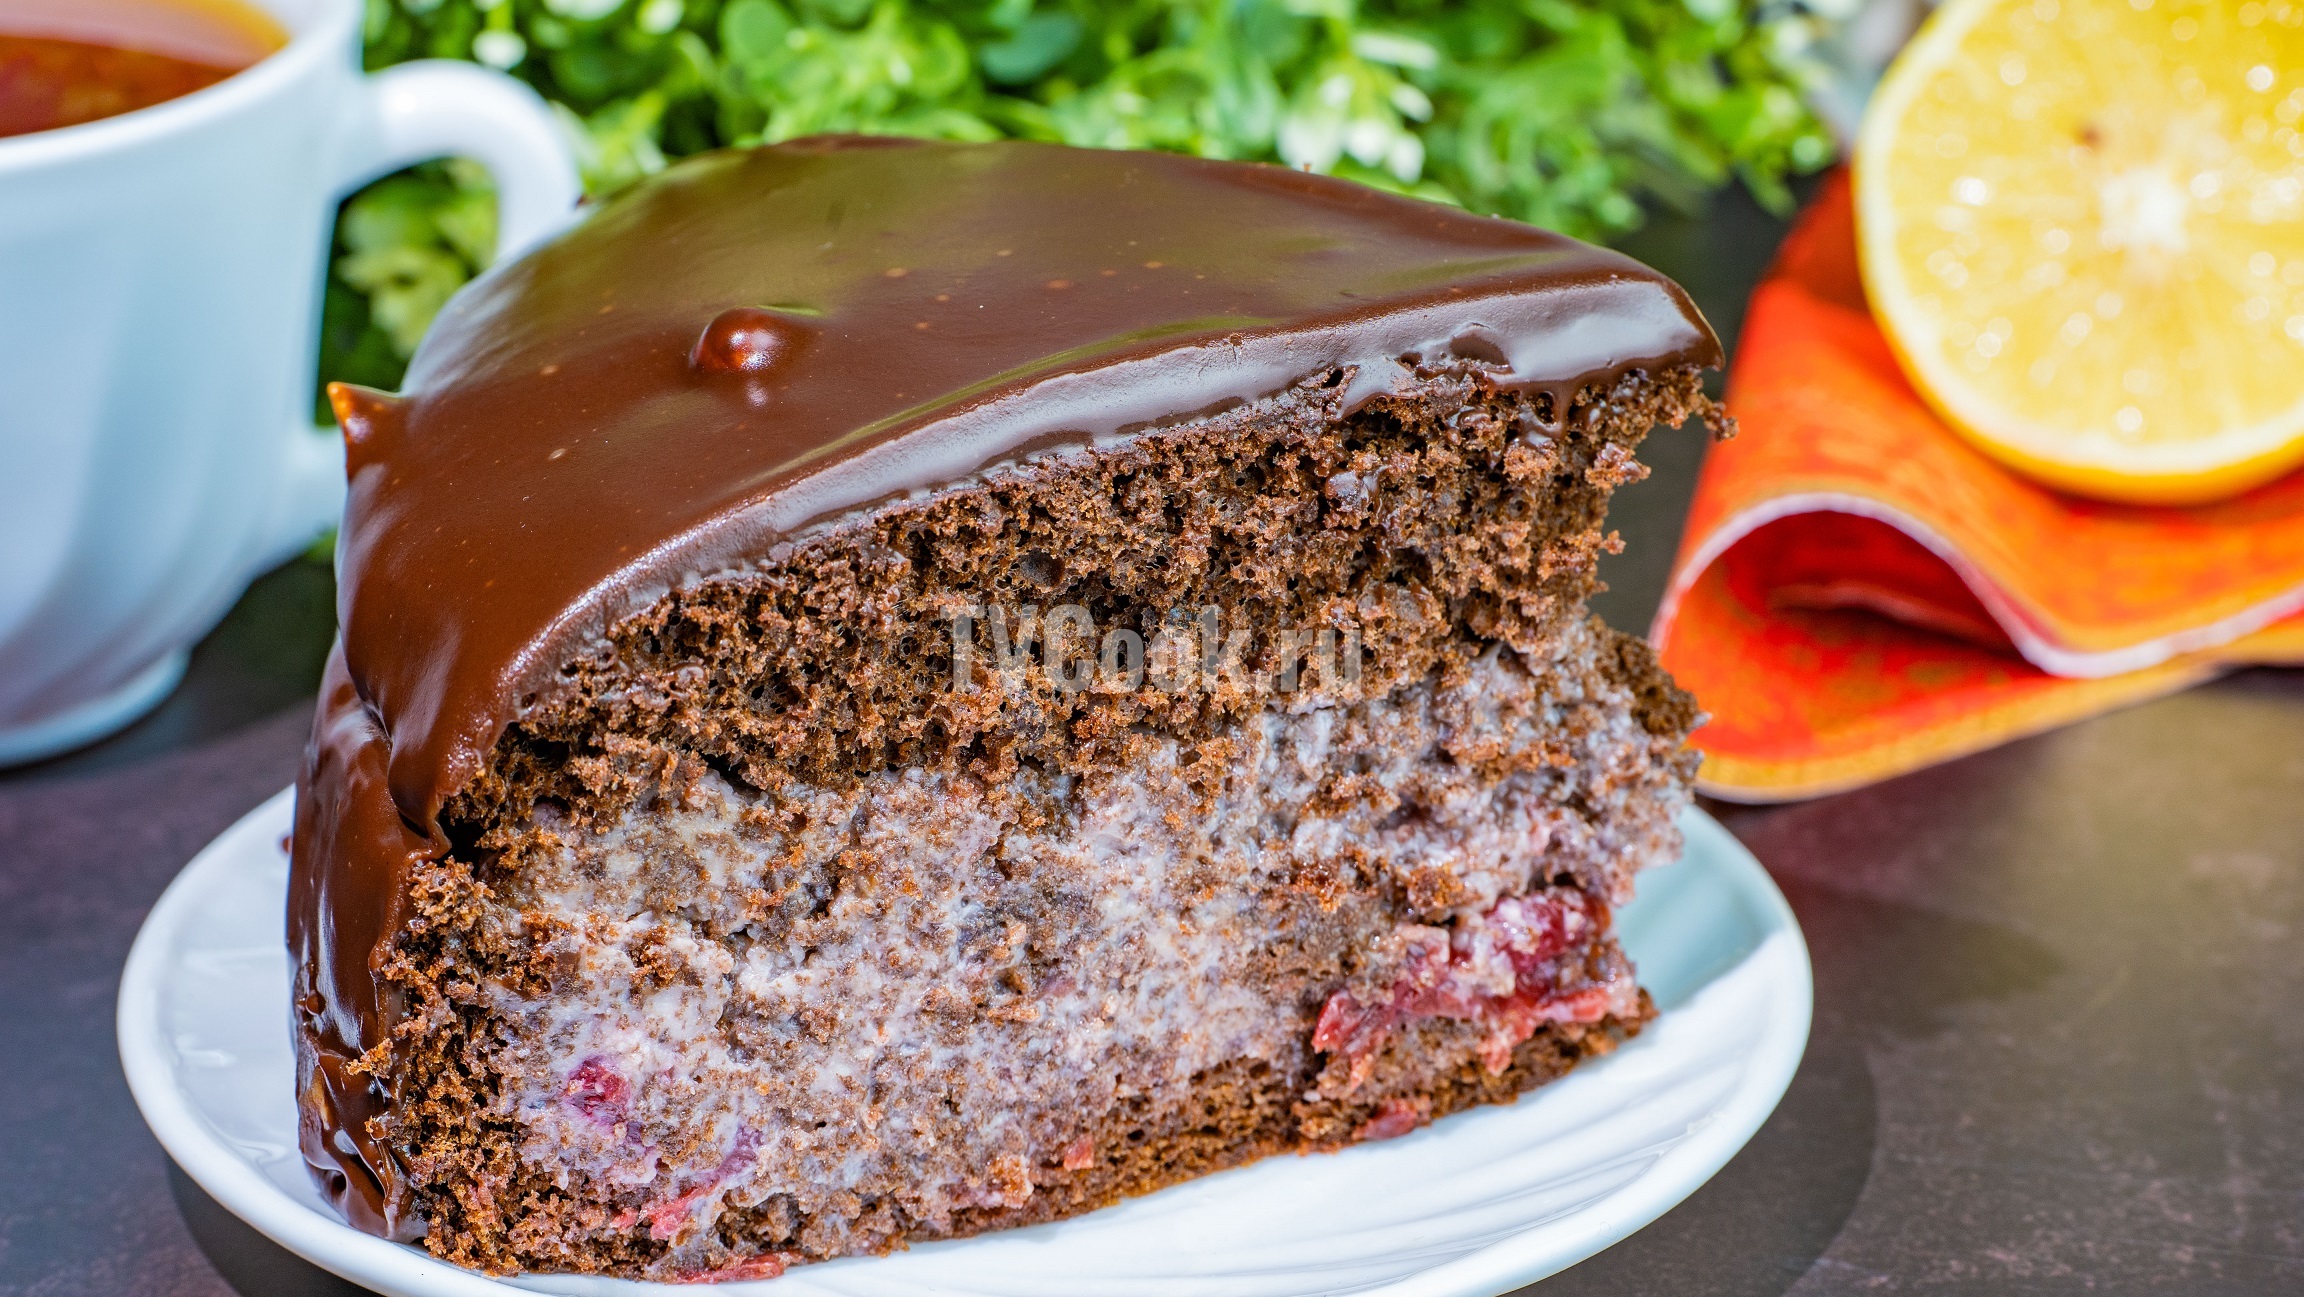 Торт «Пьяная вишня» с шоколадной глазурью — пошаговый рецепт с фото и видео